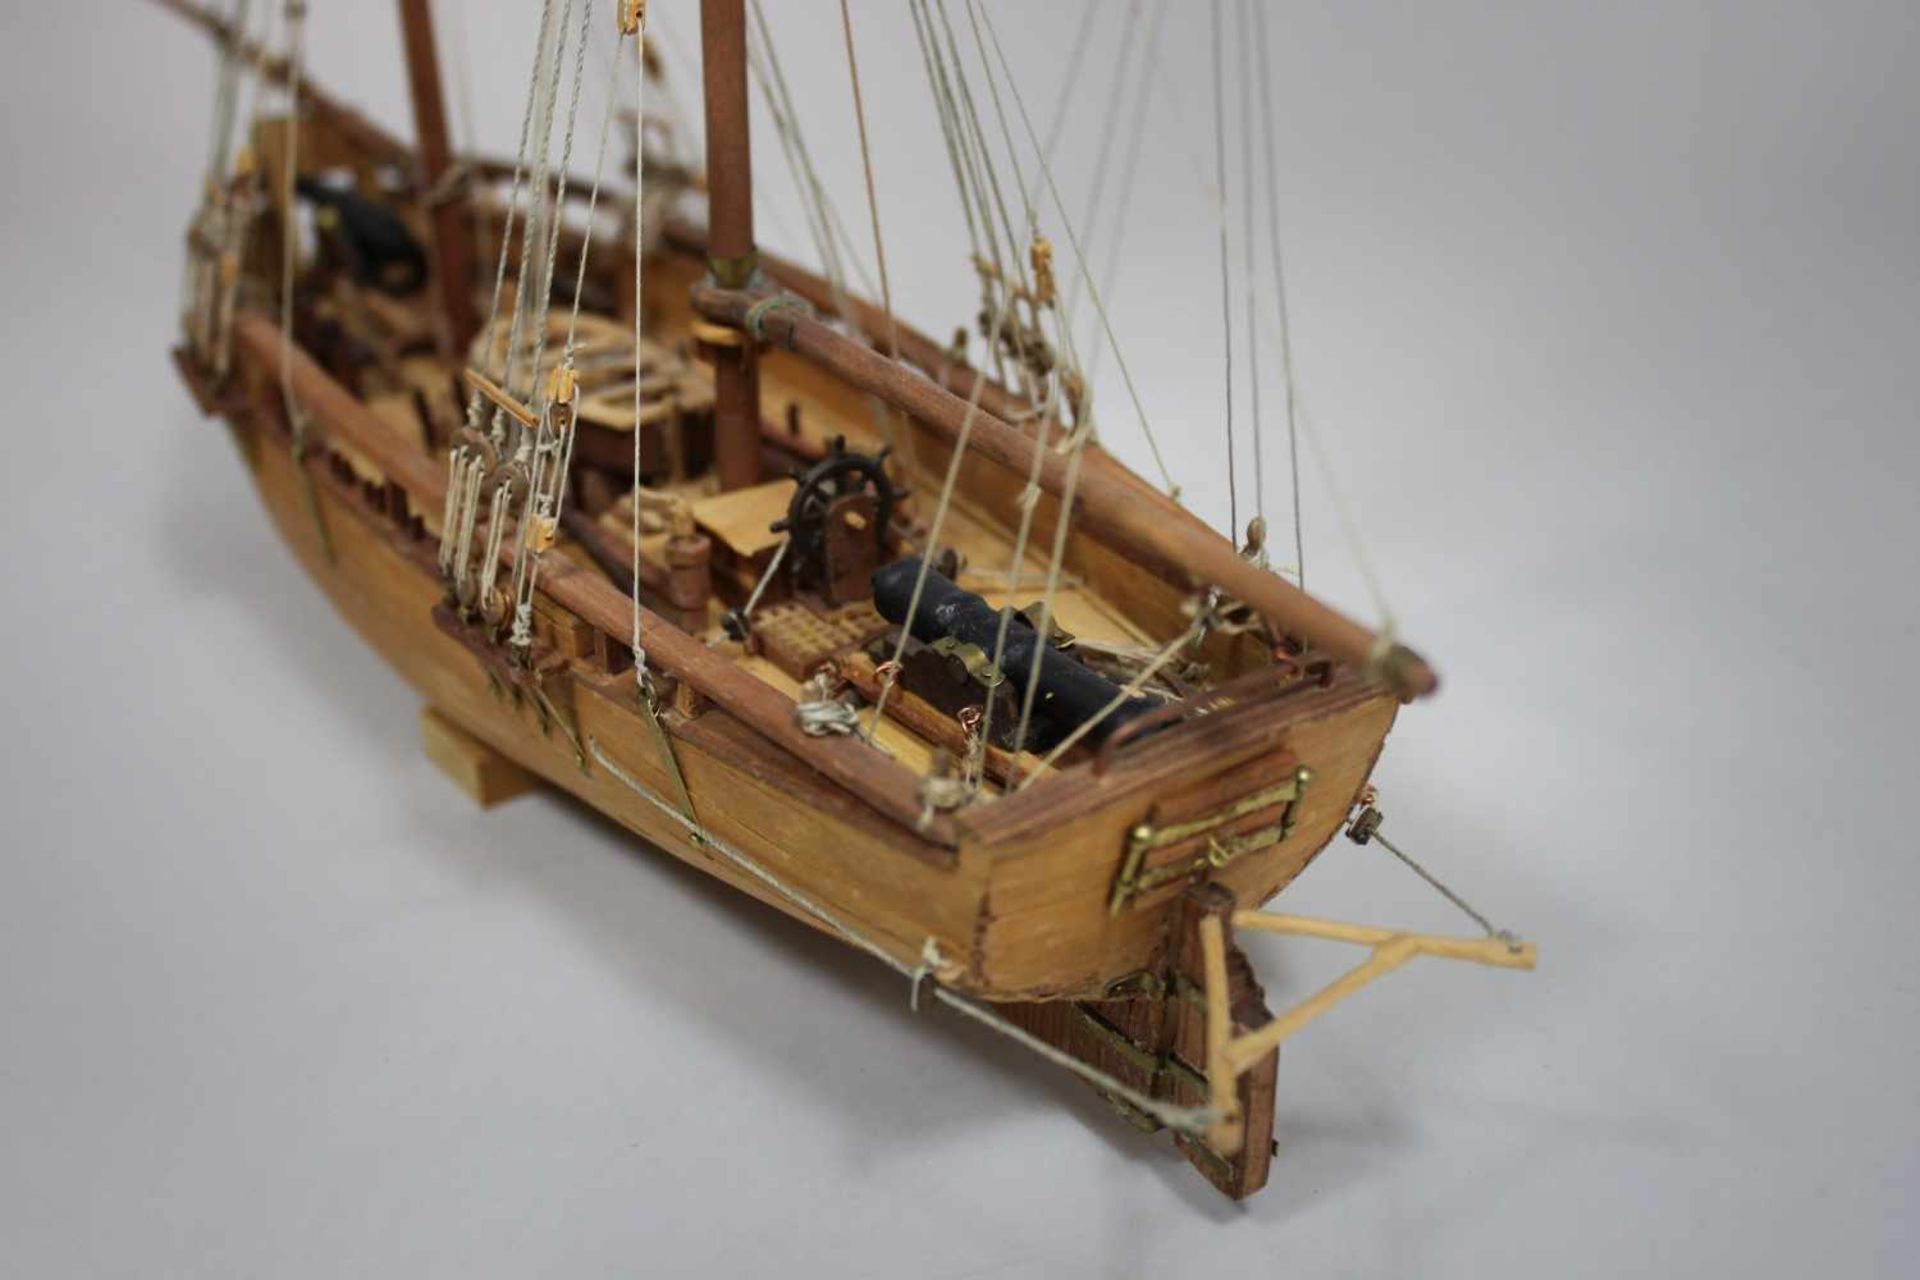 Modellschiff No. 40, Holz, teilweise farbig gefasst, Maßen ca.: 42 x 26 cm. Aus einer Privatsammlung - Bild 2 aus 2